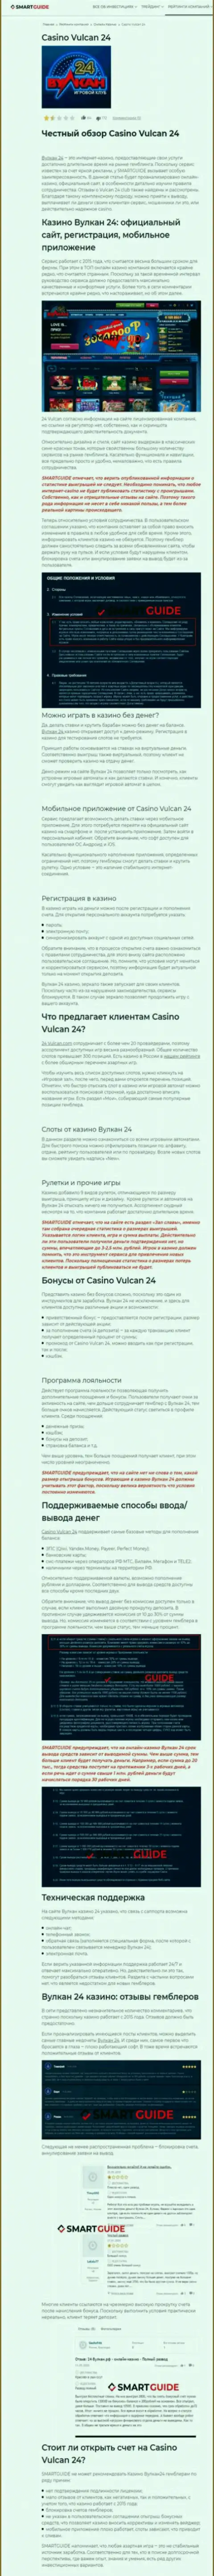 Вулкан24 - организация, зарабатывающая на грабеже вложенных денег своих клиентов (обзор)